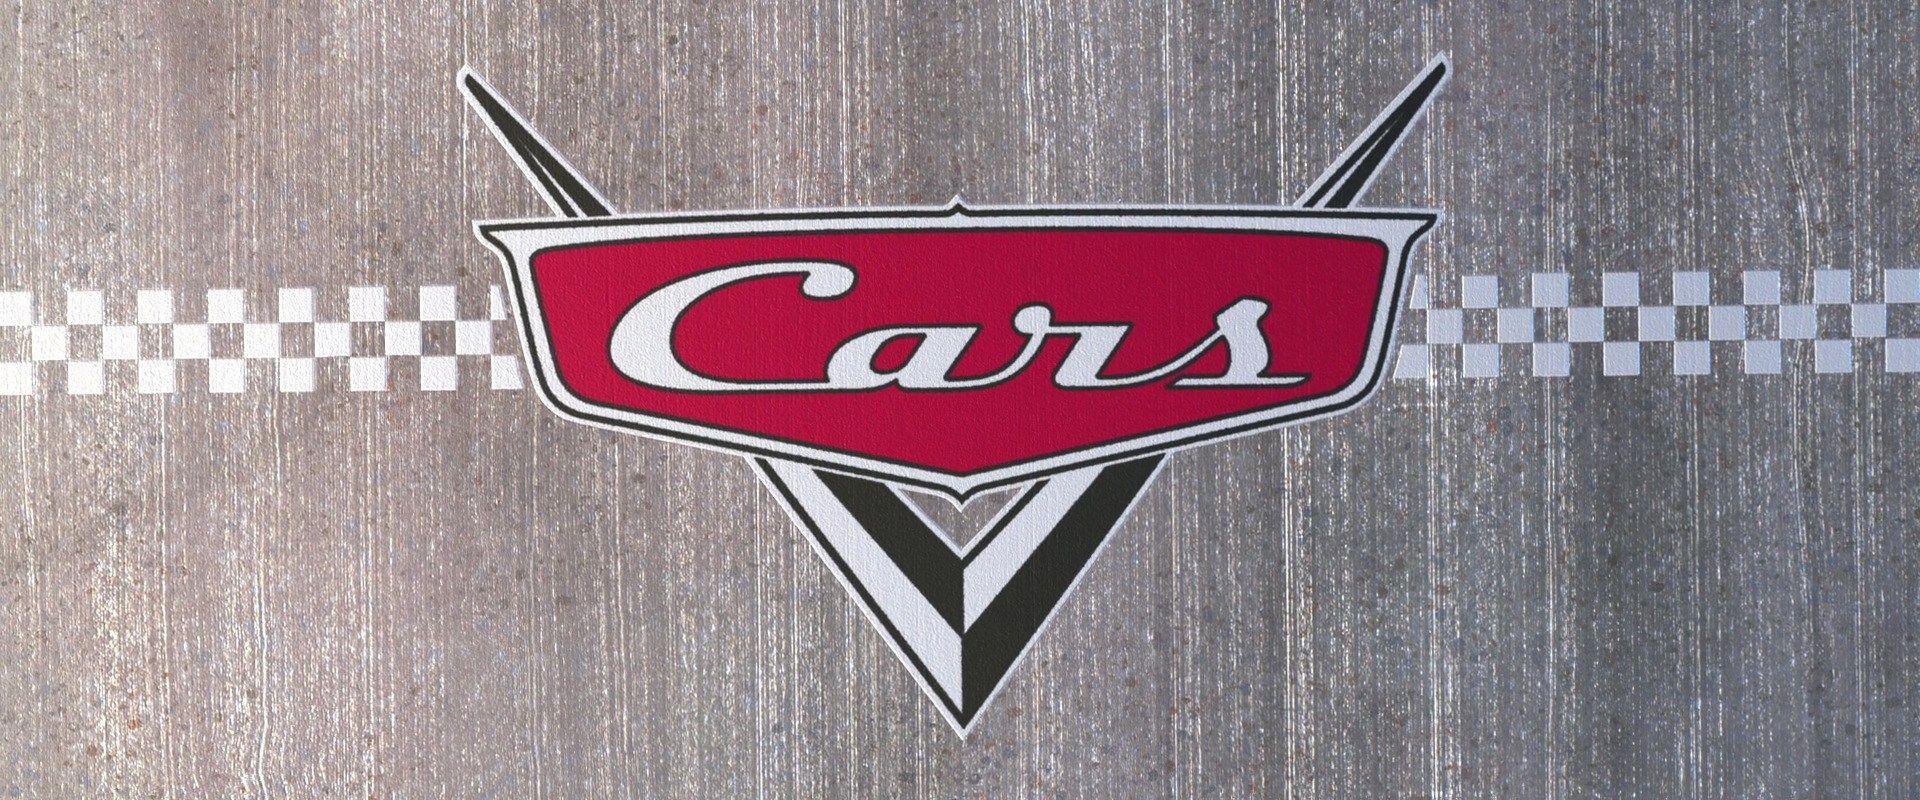 Disney Cars 1 Logo - Cars (2006)